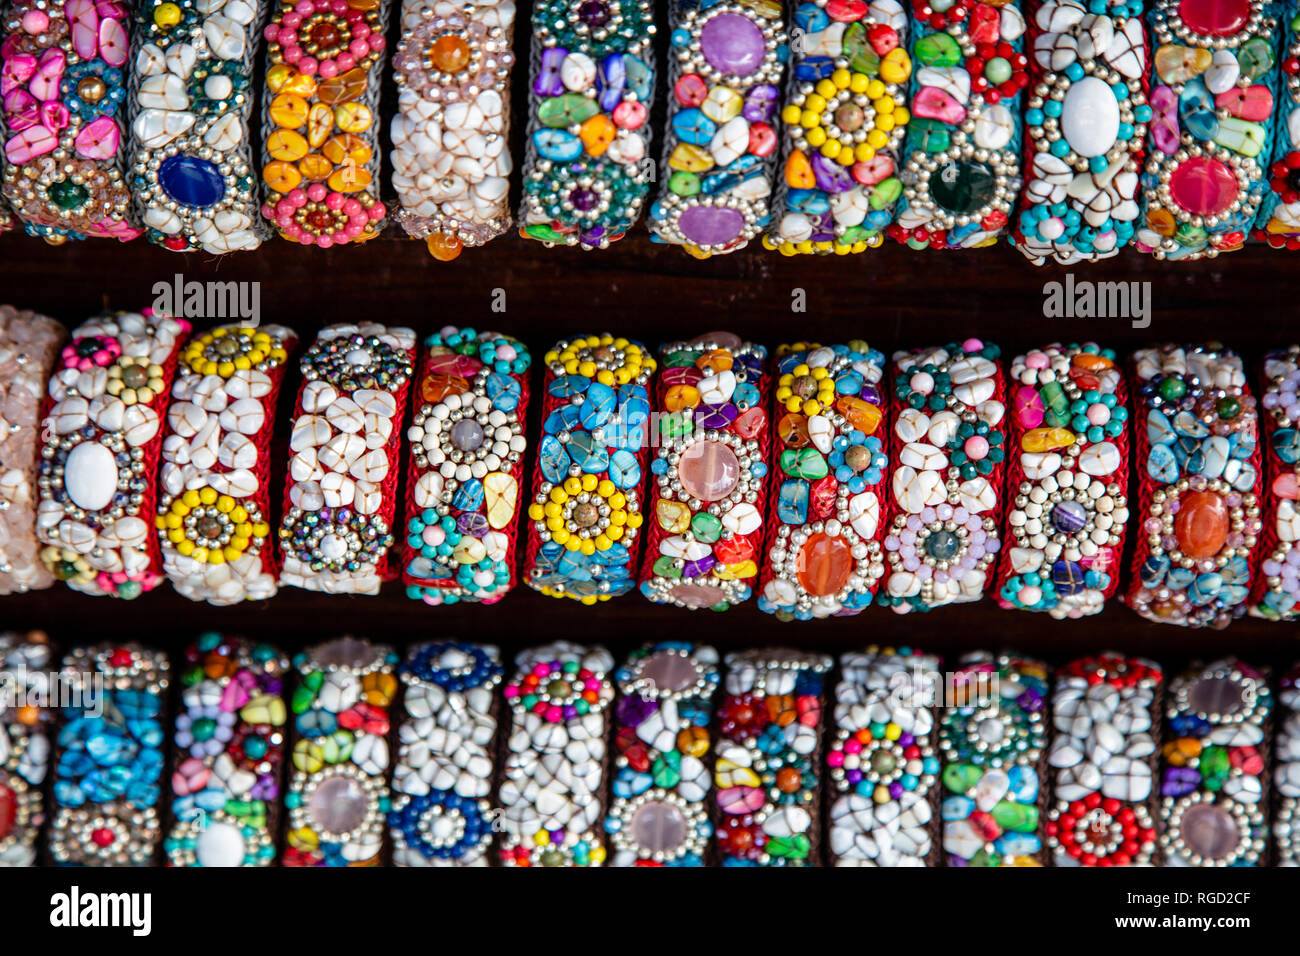 Eine Anordnung von handgemachten Schmuck bei Chatuchak Weekend Market in Bangkok, Thailand. Schmuck oder Schmuck besteht aus kleinen dekorativen Elementen getragen Stockfoto